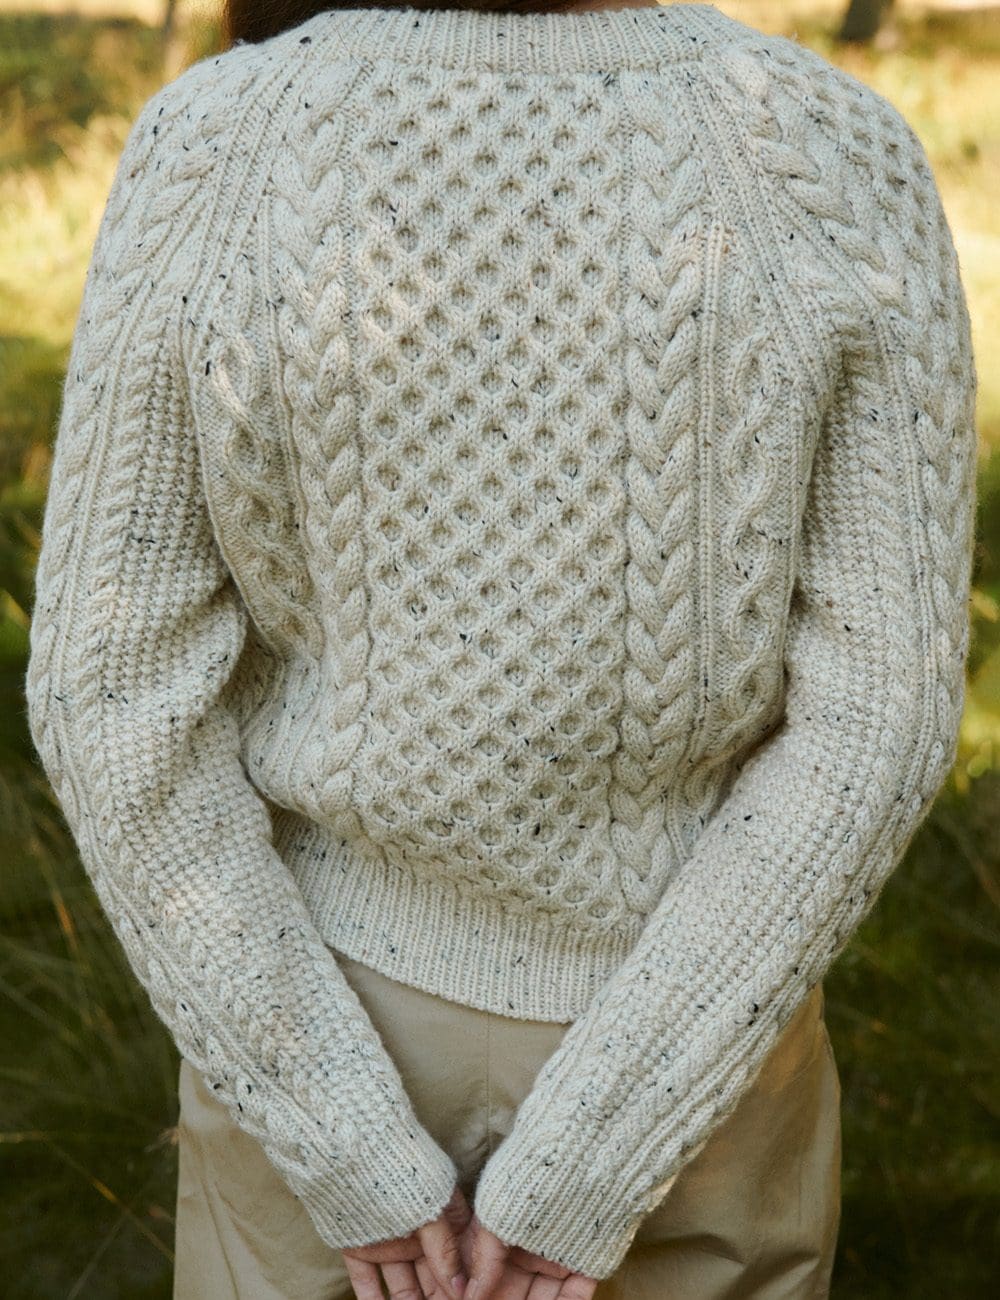 Cara-sweater-2-le-knit-lene-holme-samsoee-samsøe-strikkeopskrift-p